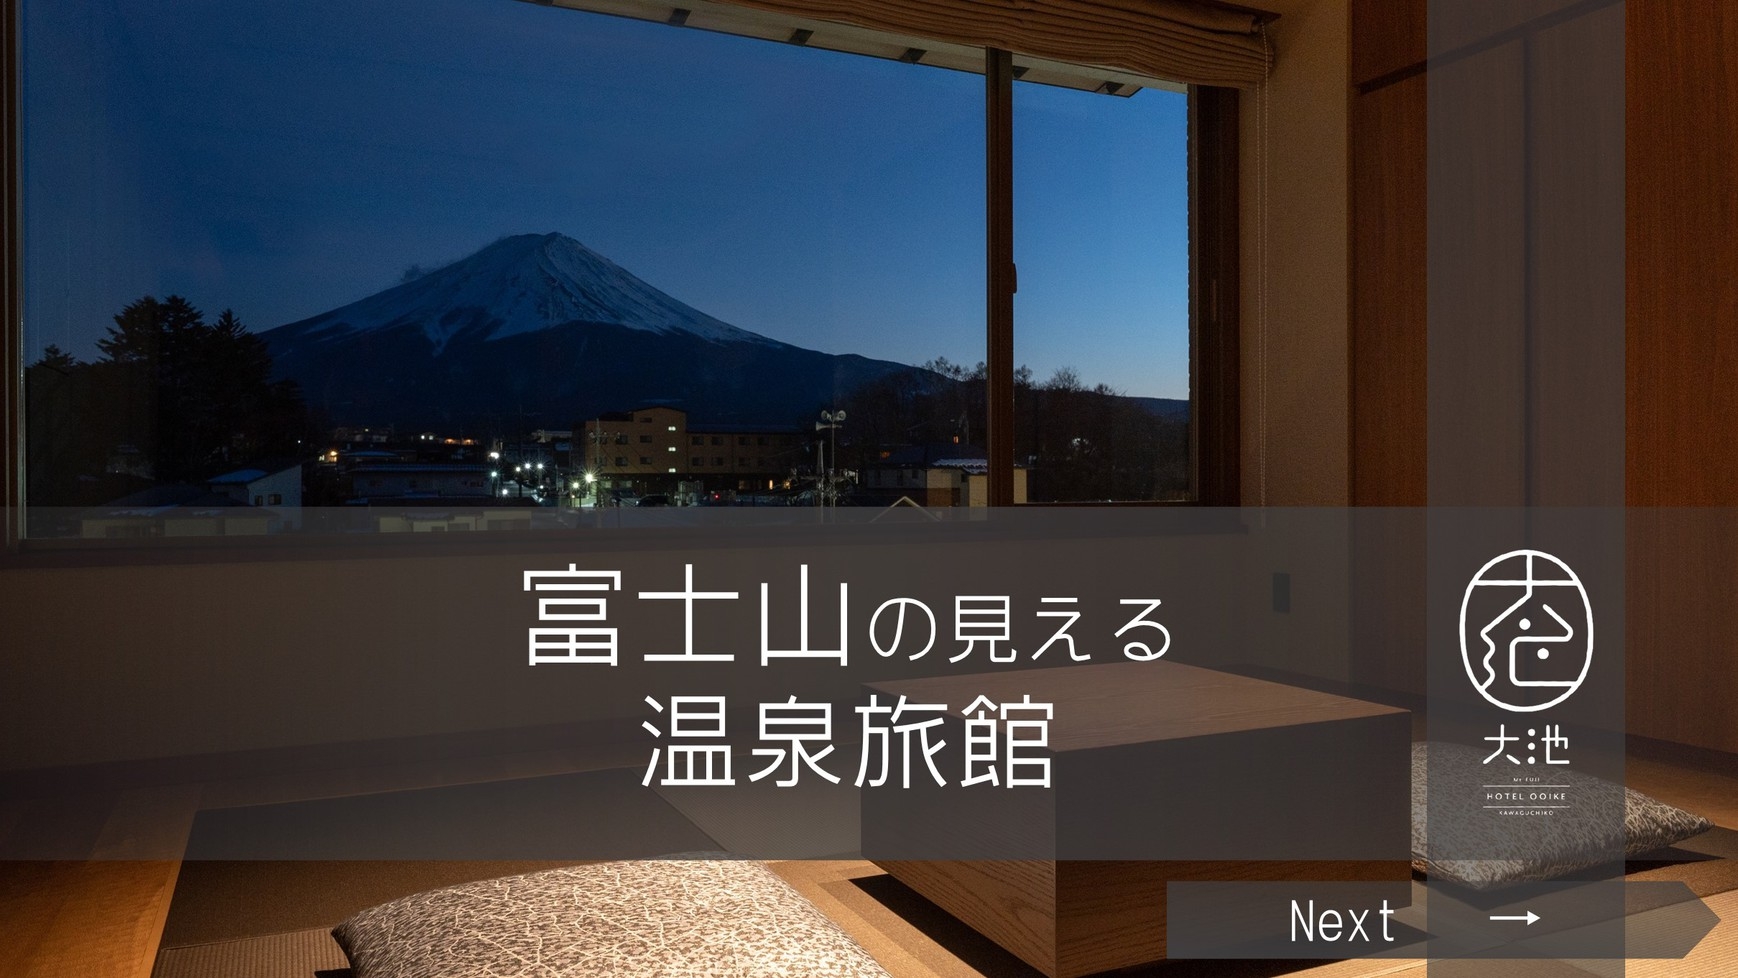 ー富士山の見える温泉旅館ー『基本プラン』【二食付】【楽天トラベル全国1位】【夏休みの予約開始】